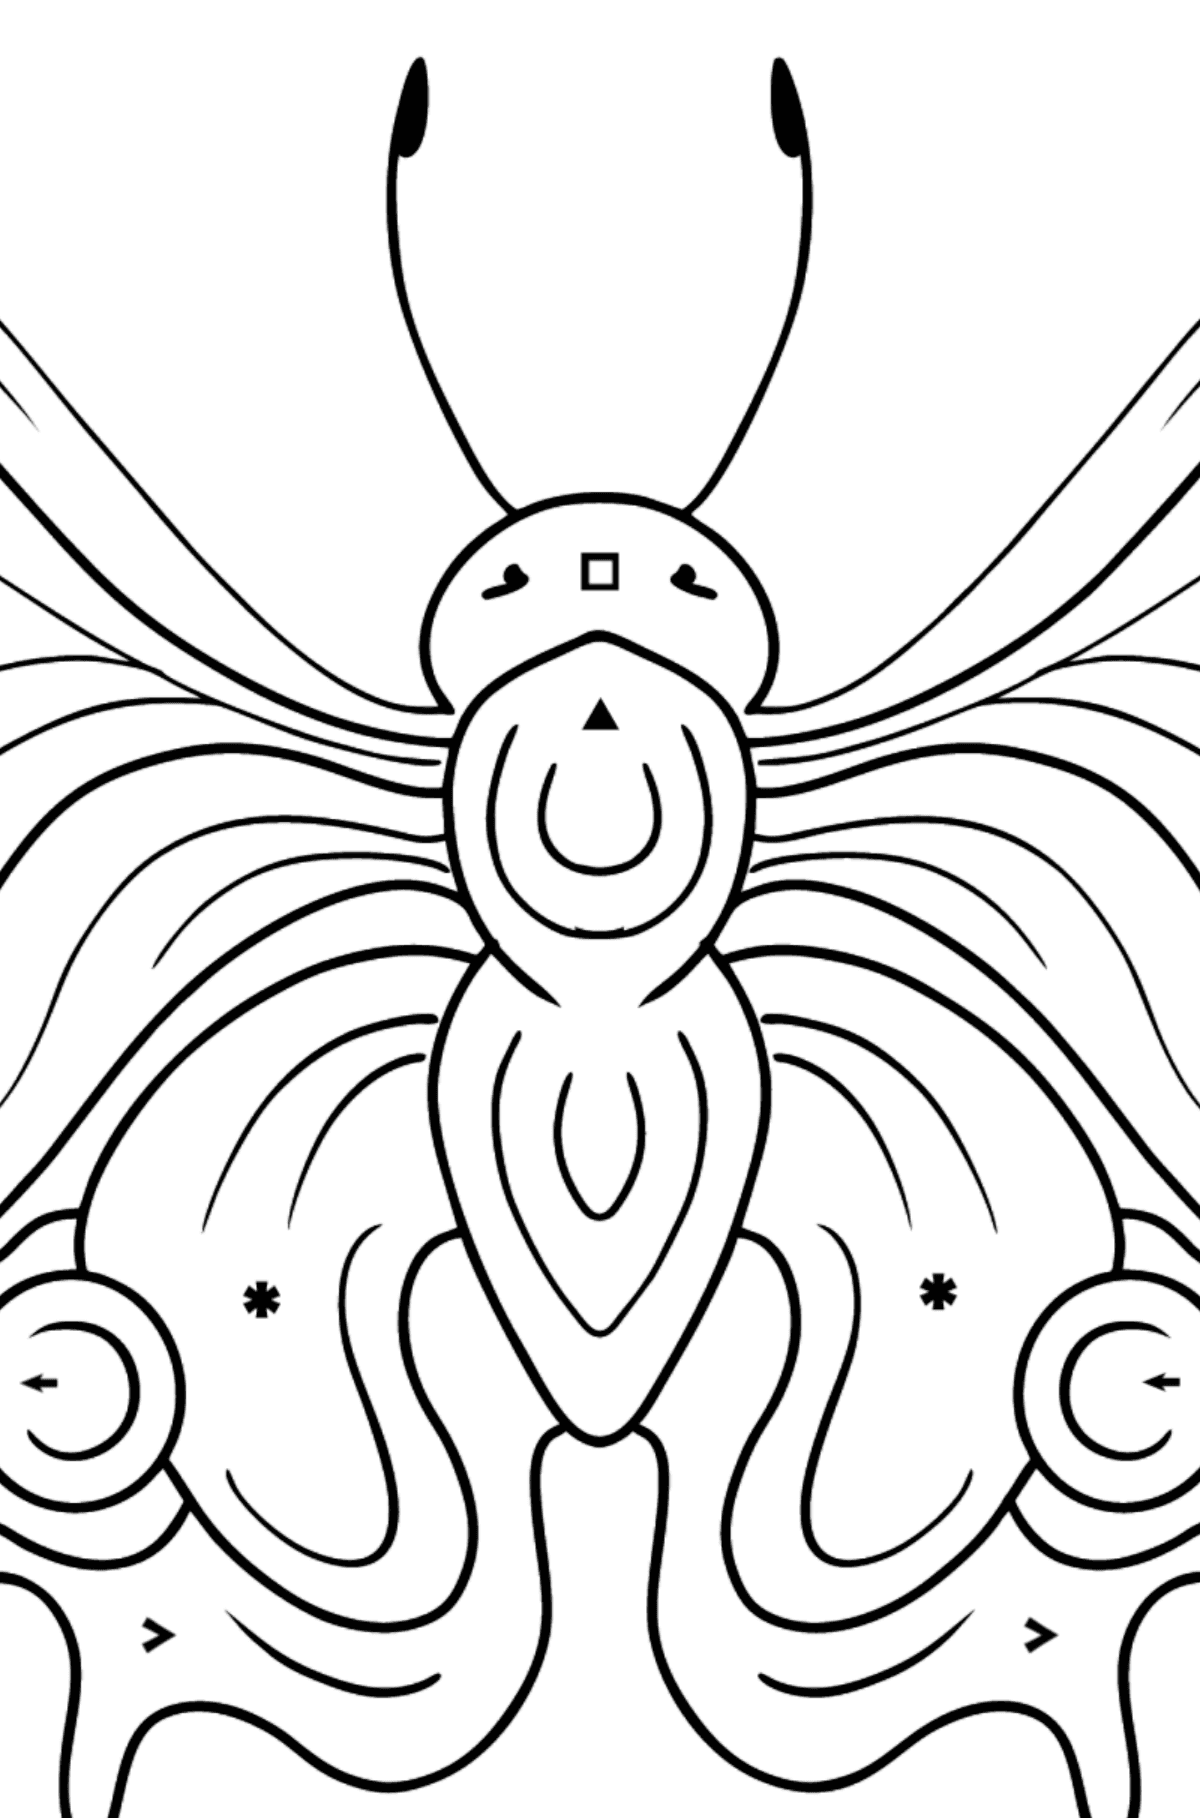 Kolorowanka Paw motyl - Kolorowanie według symboli dla dzieci